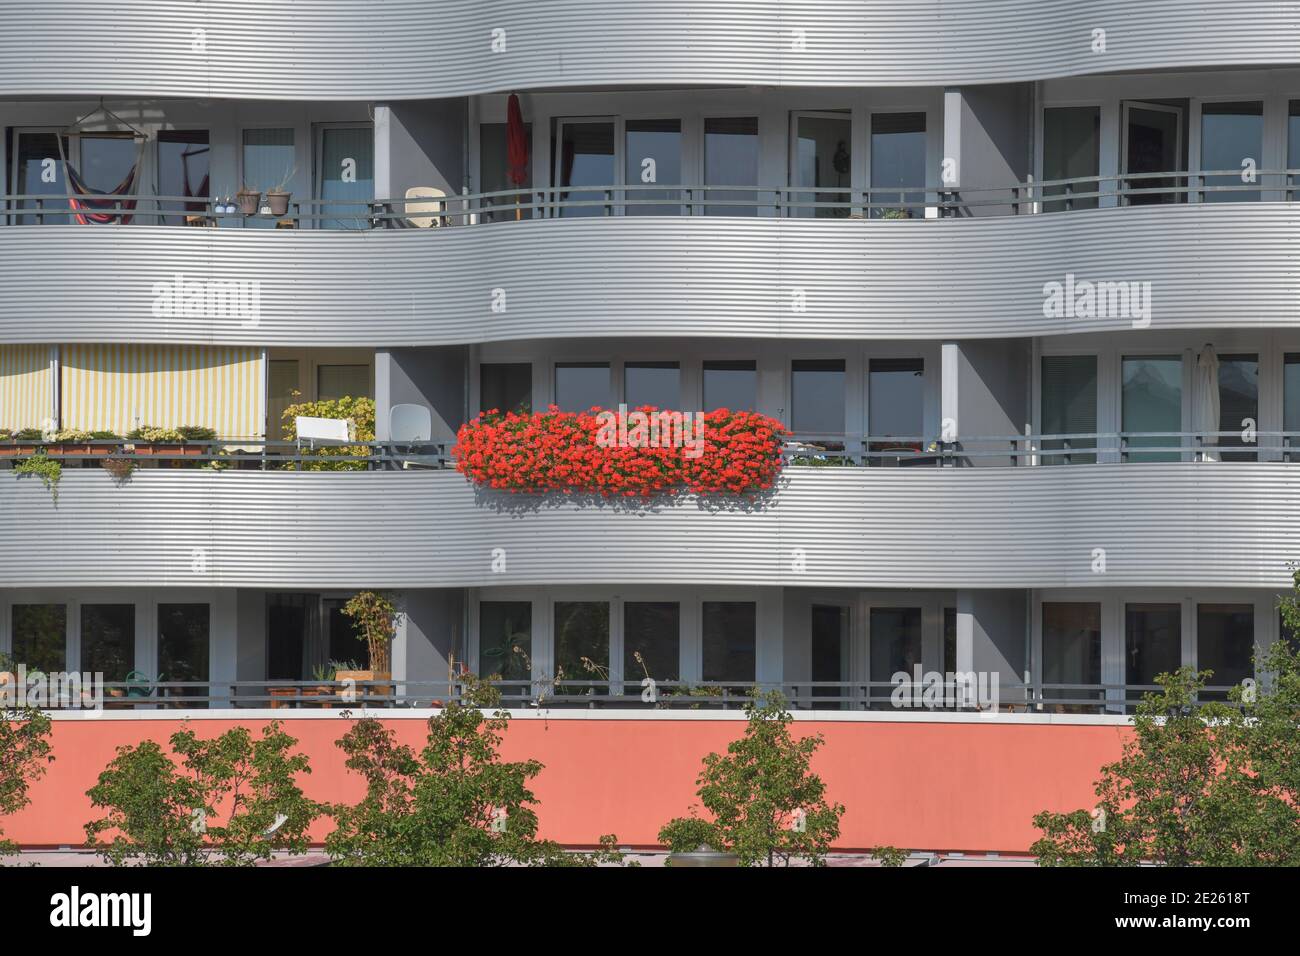 Balkon, Wohnhaus, Stralauer Allee, Friedrichshain, Friedrichshain-Kreuzberg, Berlín, Alemania Foto de stock